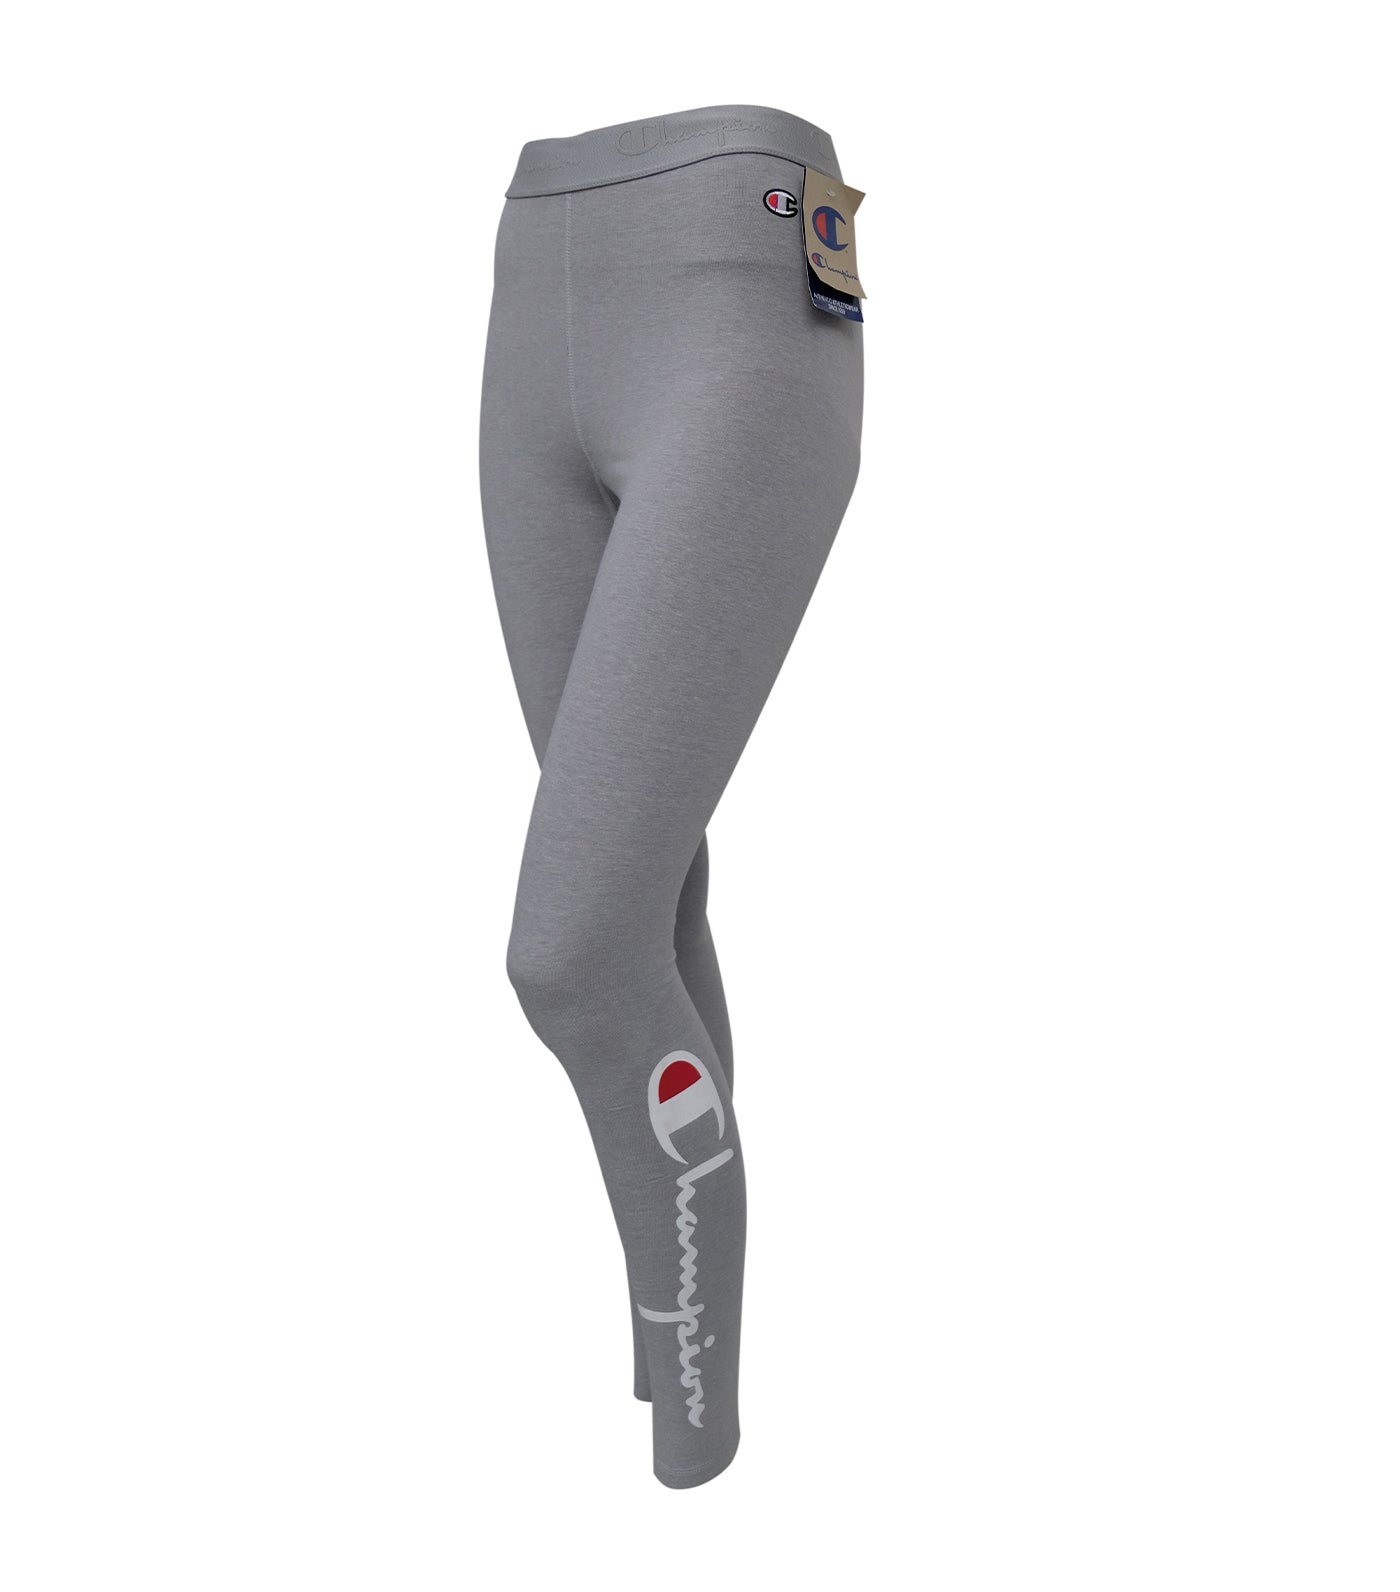 Spanx stonewash gray twill stretch denim shorts women's L :  r/gym_apparel_for_women